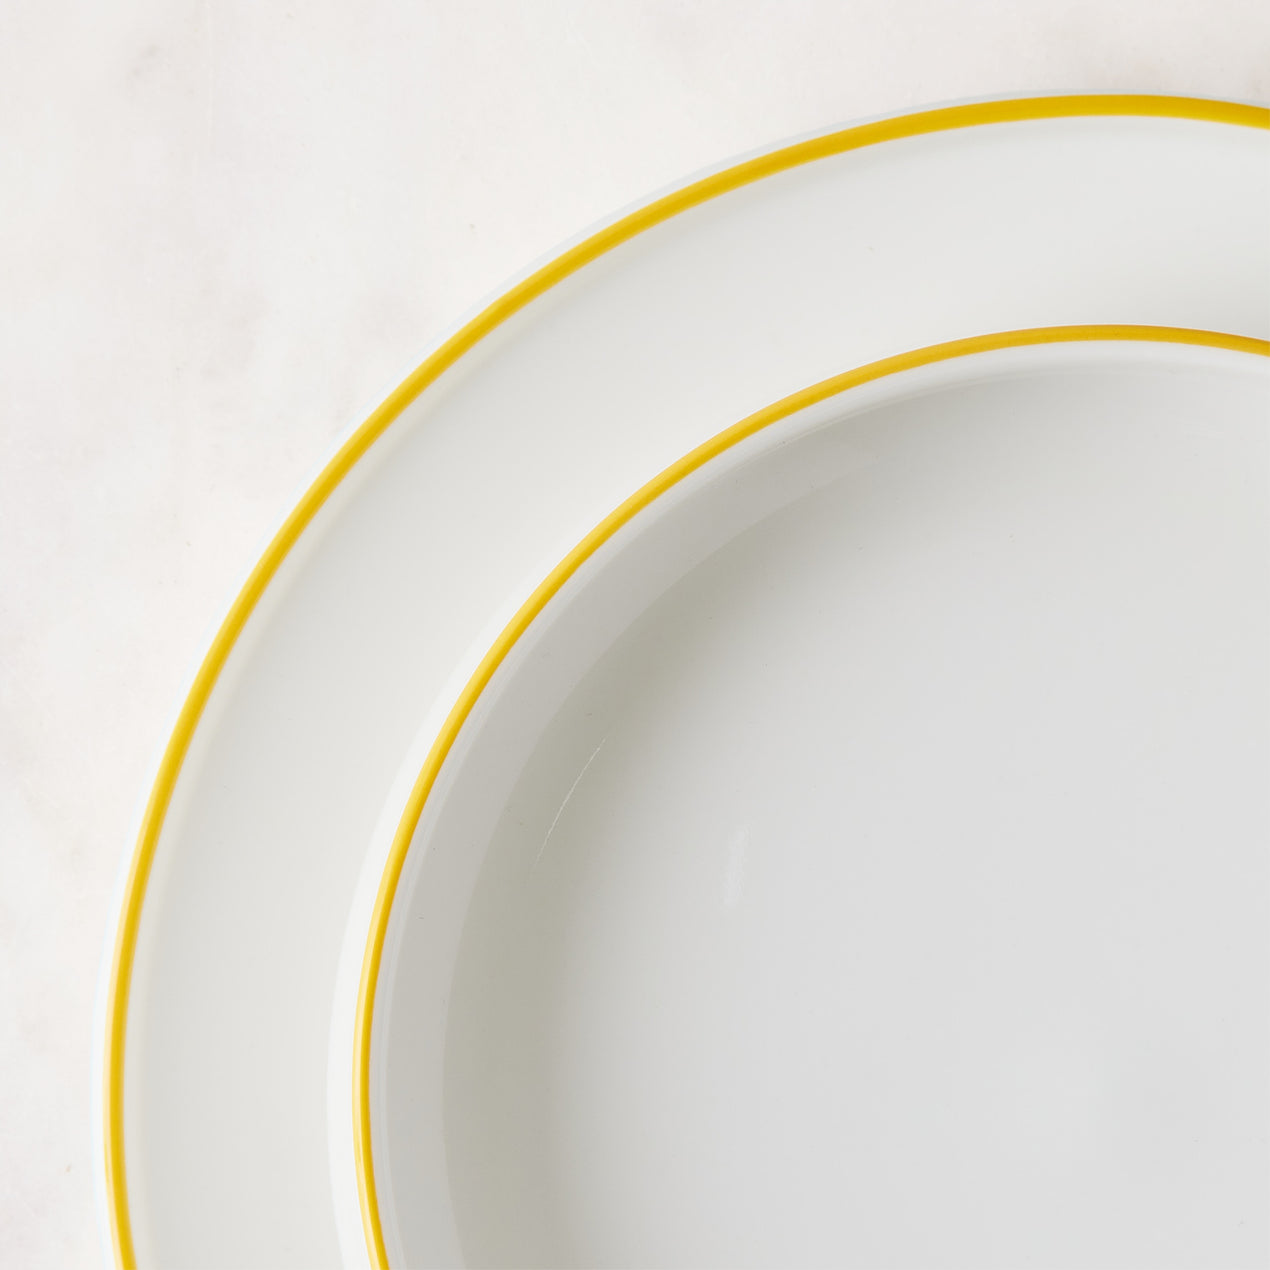 Købenstyle Porcelain Yellow Salad Plate, Set of 4